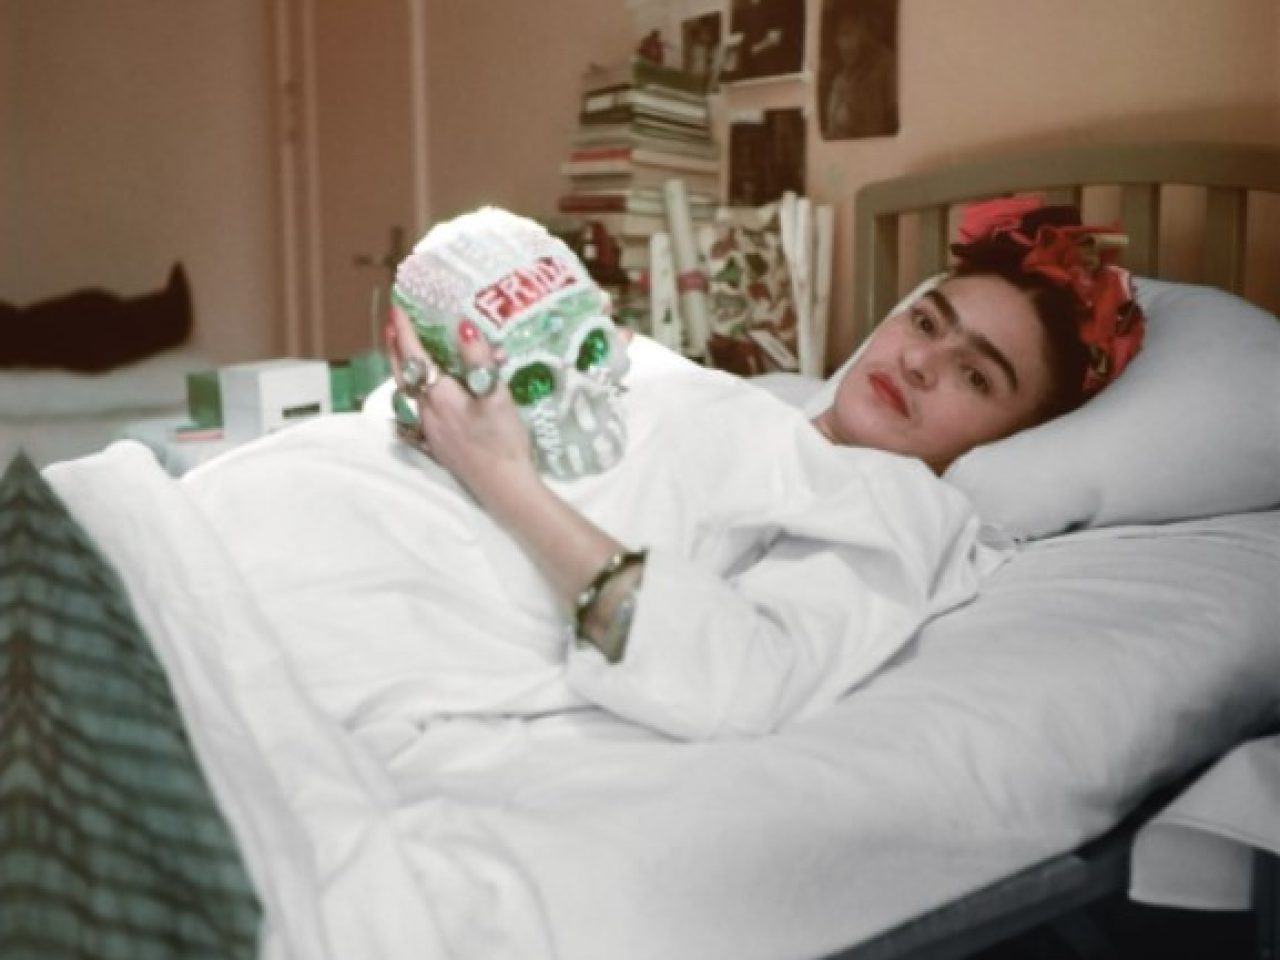 Photo of Frida Kahlo holding a skull